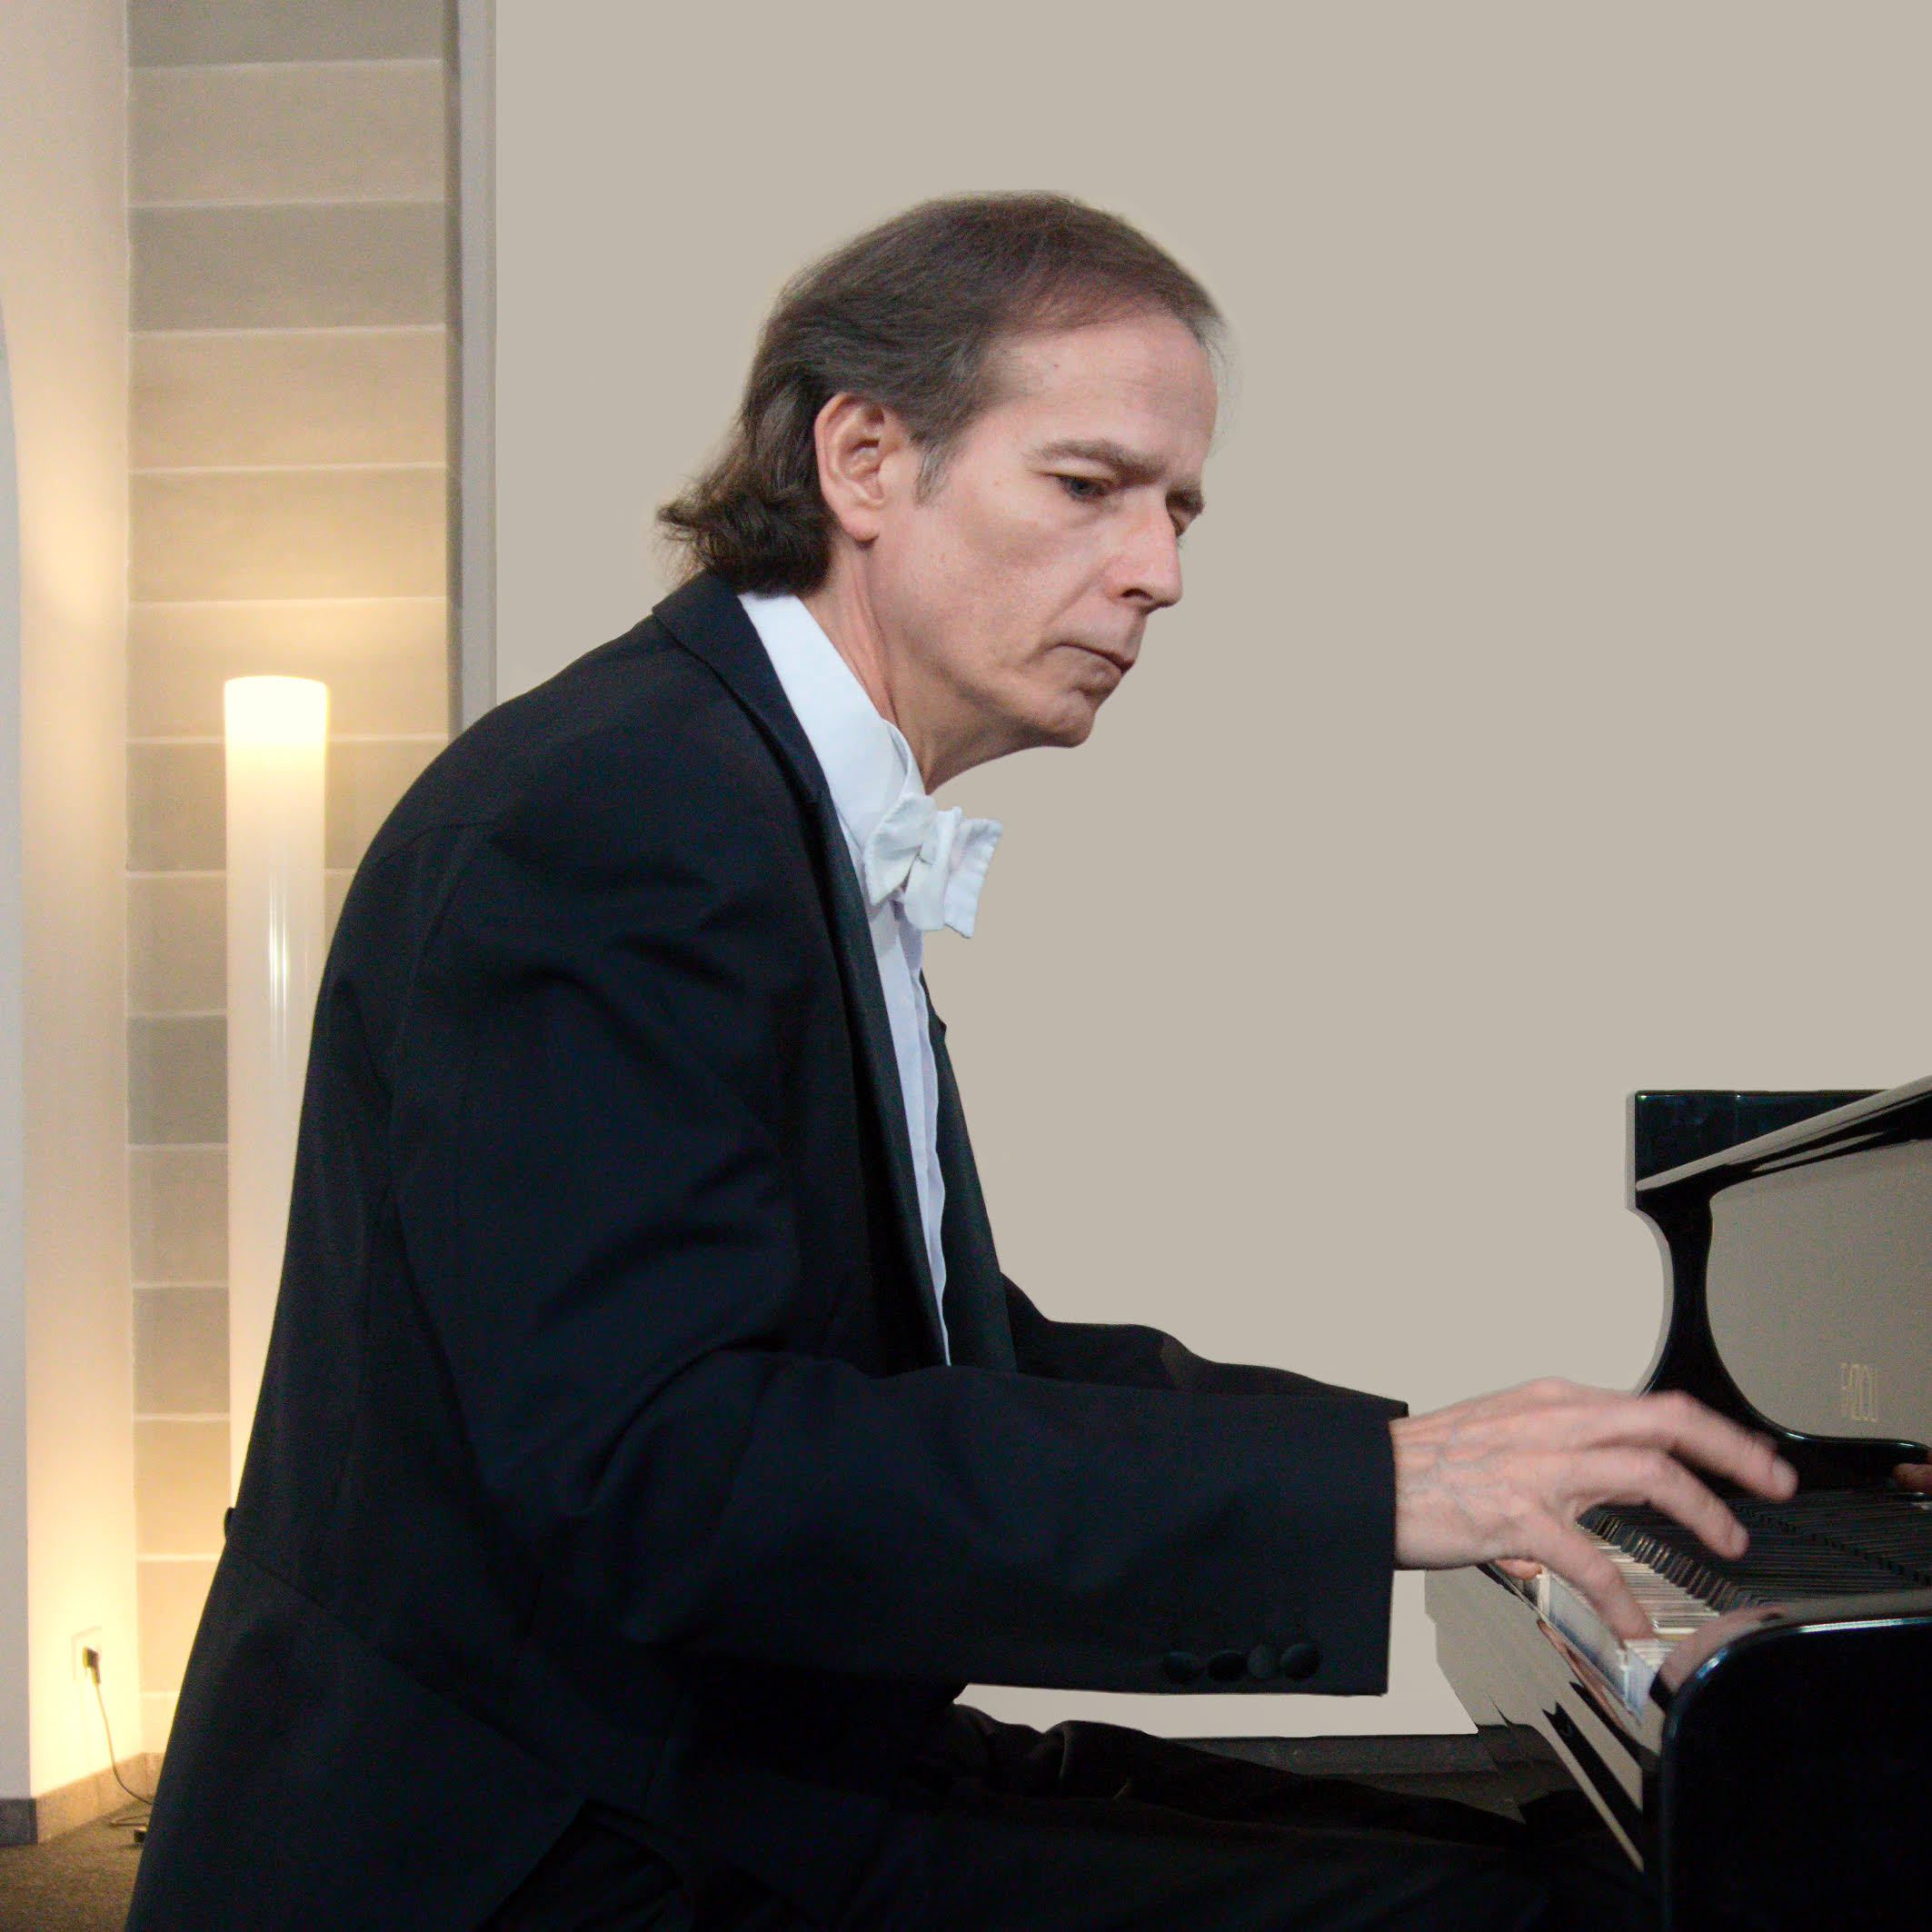 Klavier-Highlight: Chopin, Brahms, Liszt und Tausig - Meisterpianist Menachem Har-Zahav zu Gast in Ahrweiler